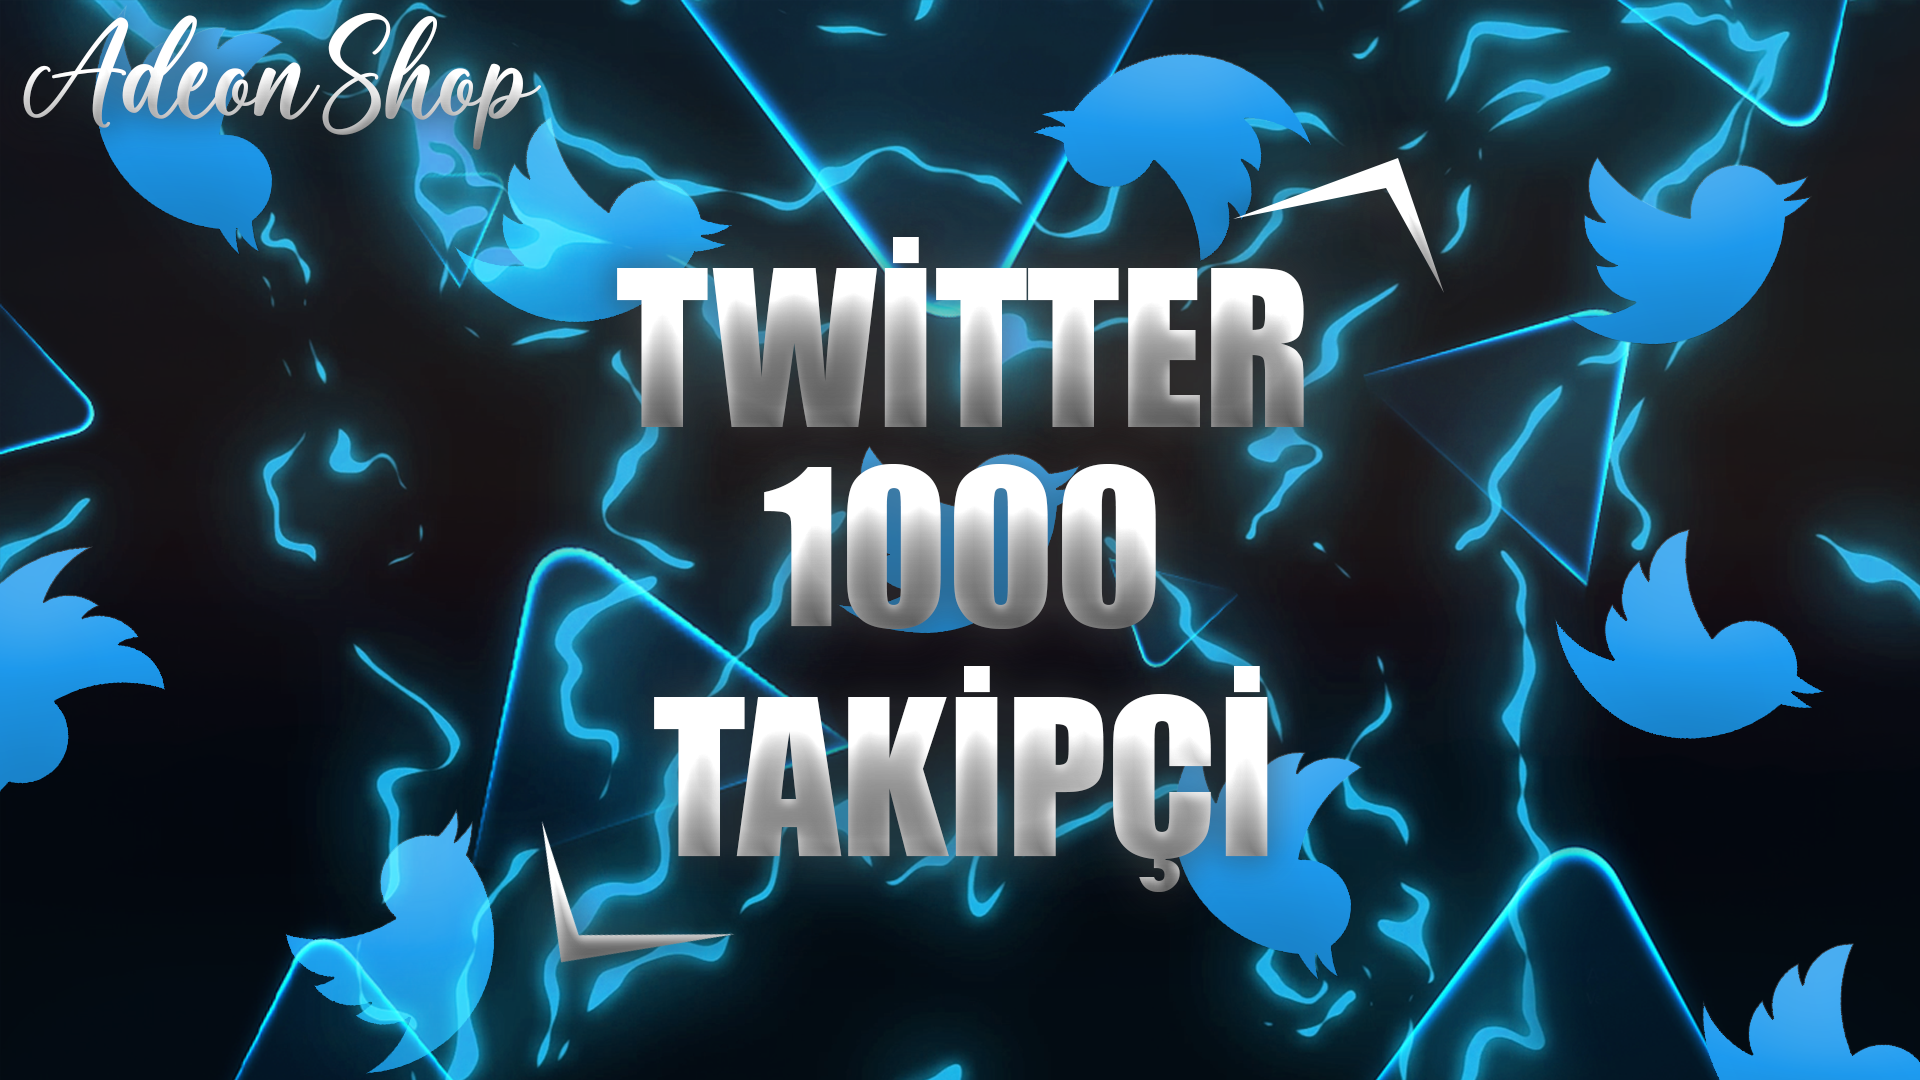 Twitter 1000 Takipçi | [KALİTELİ&GÜVENLİ]